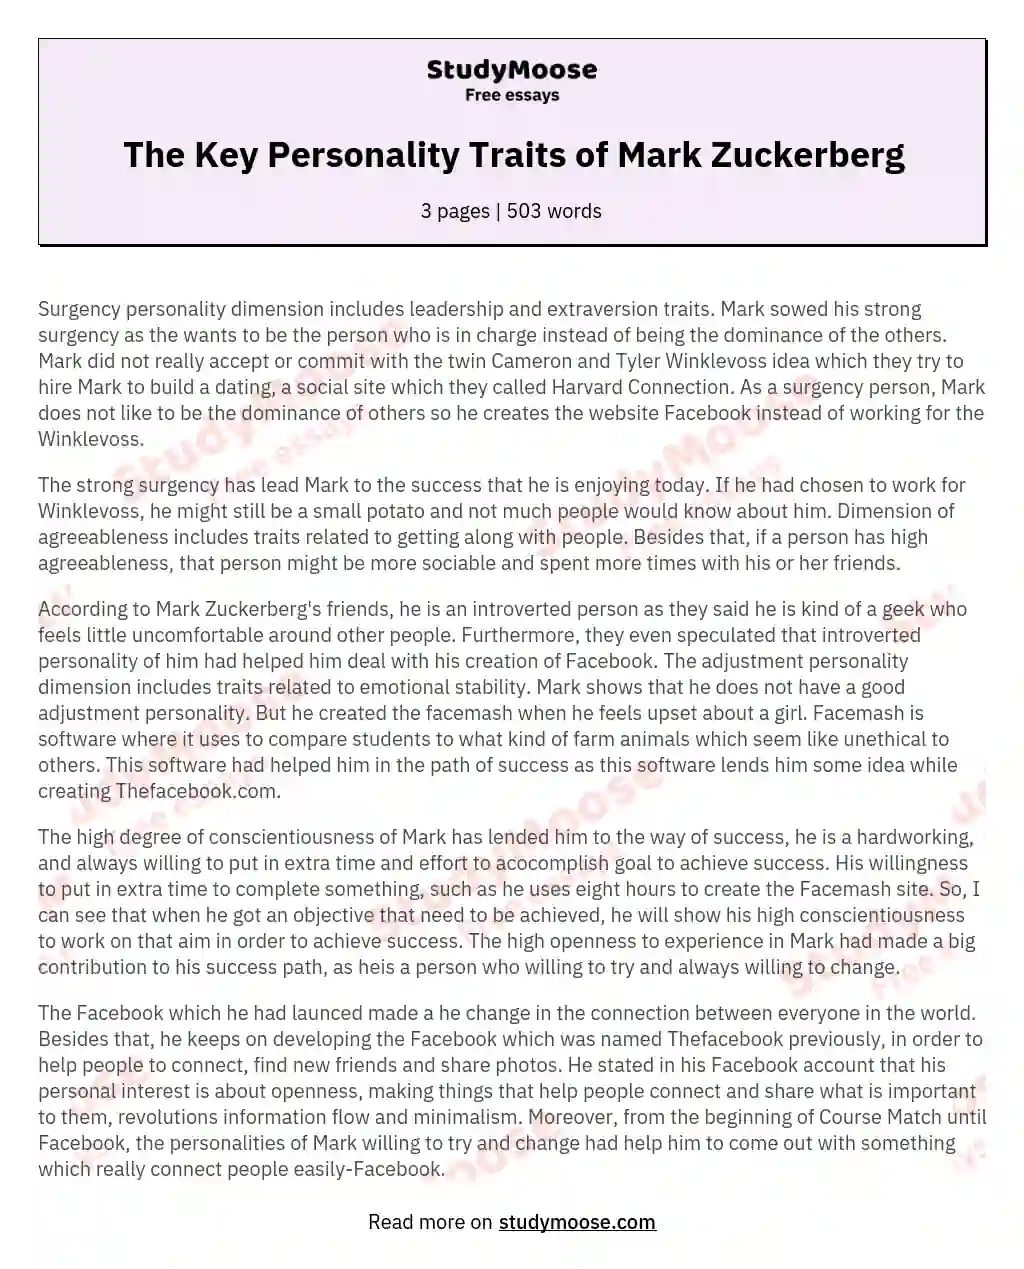 The Key Personality Traits of Mark Zuckerberg essay